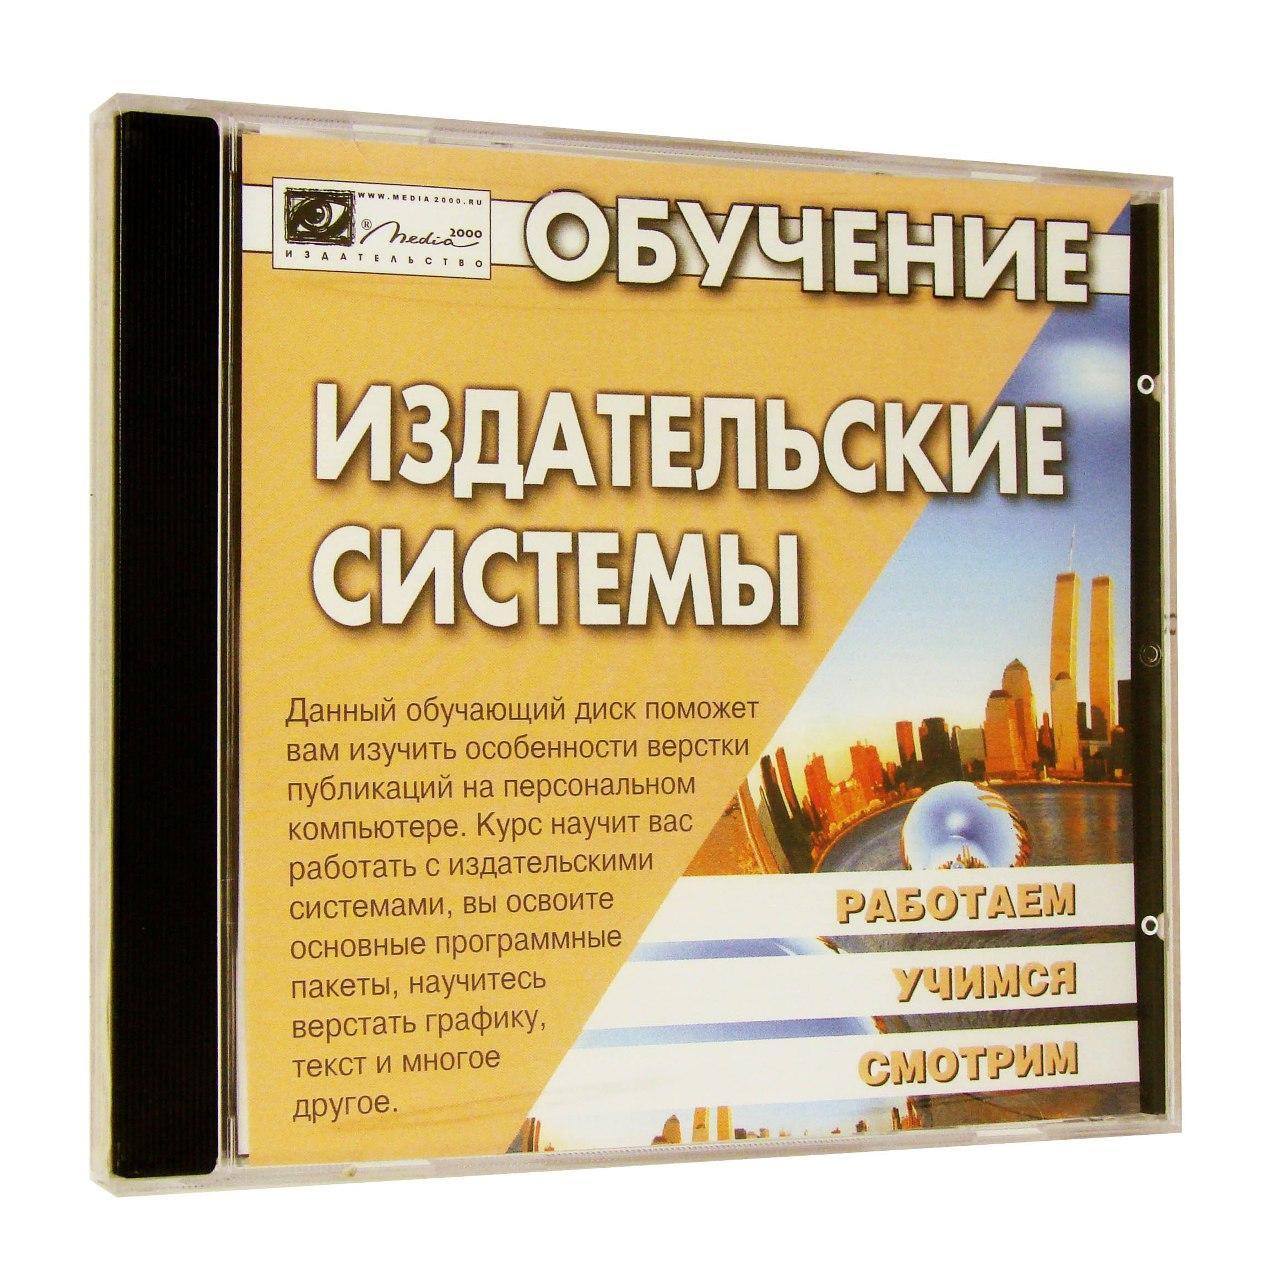 Компьютерный компакт-диск Обучение Издательские системы (ПК), фирма "Медиа 2000", 1CD